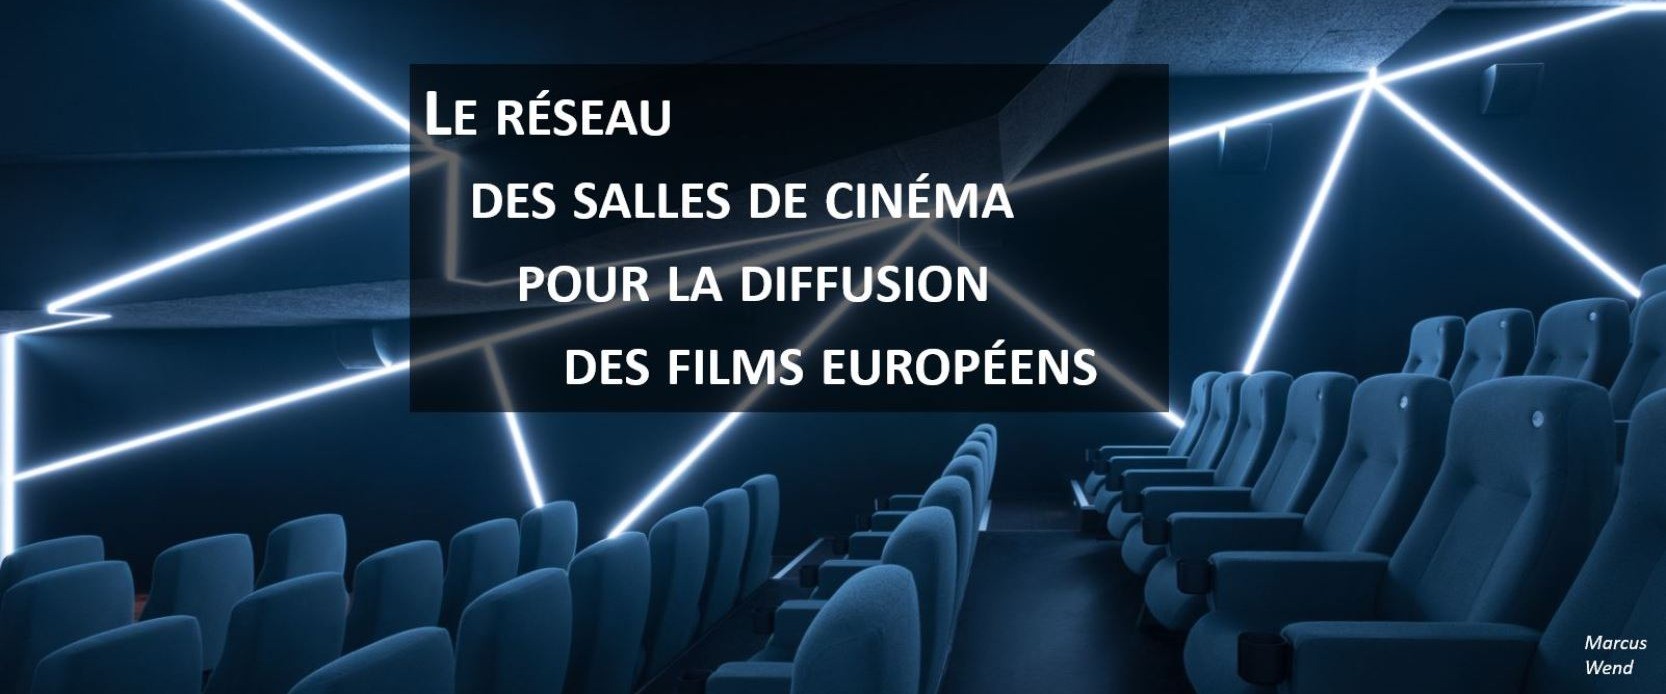 Europa Cinéma